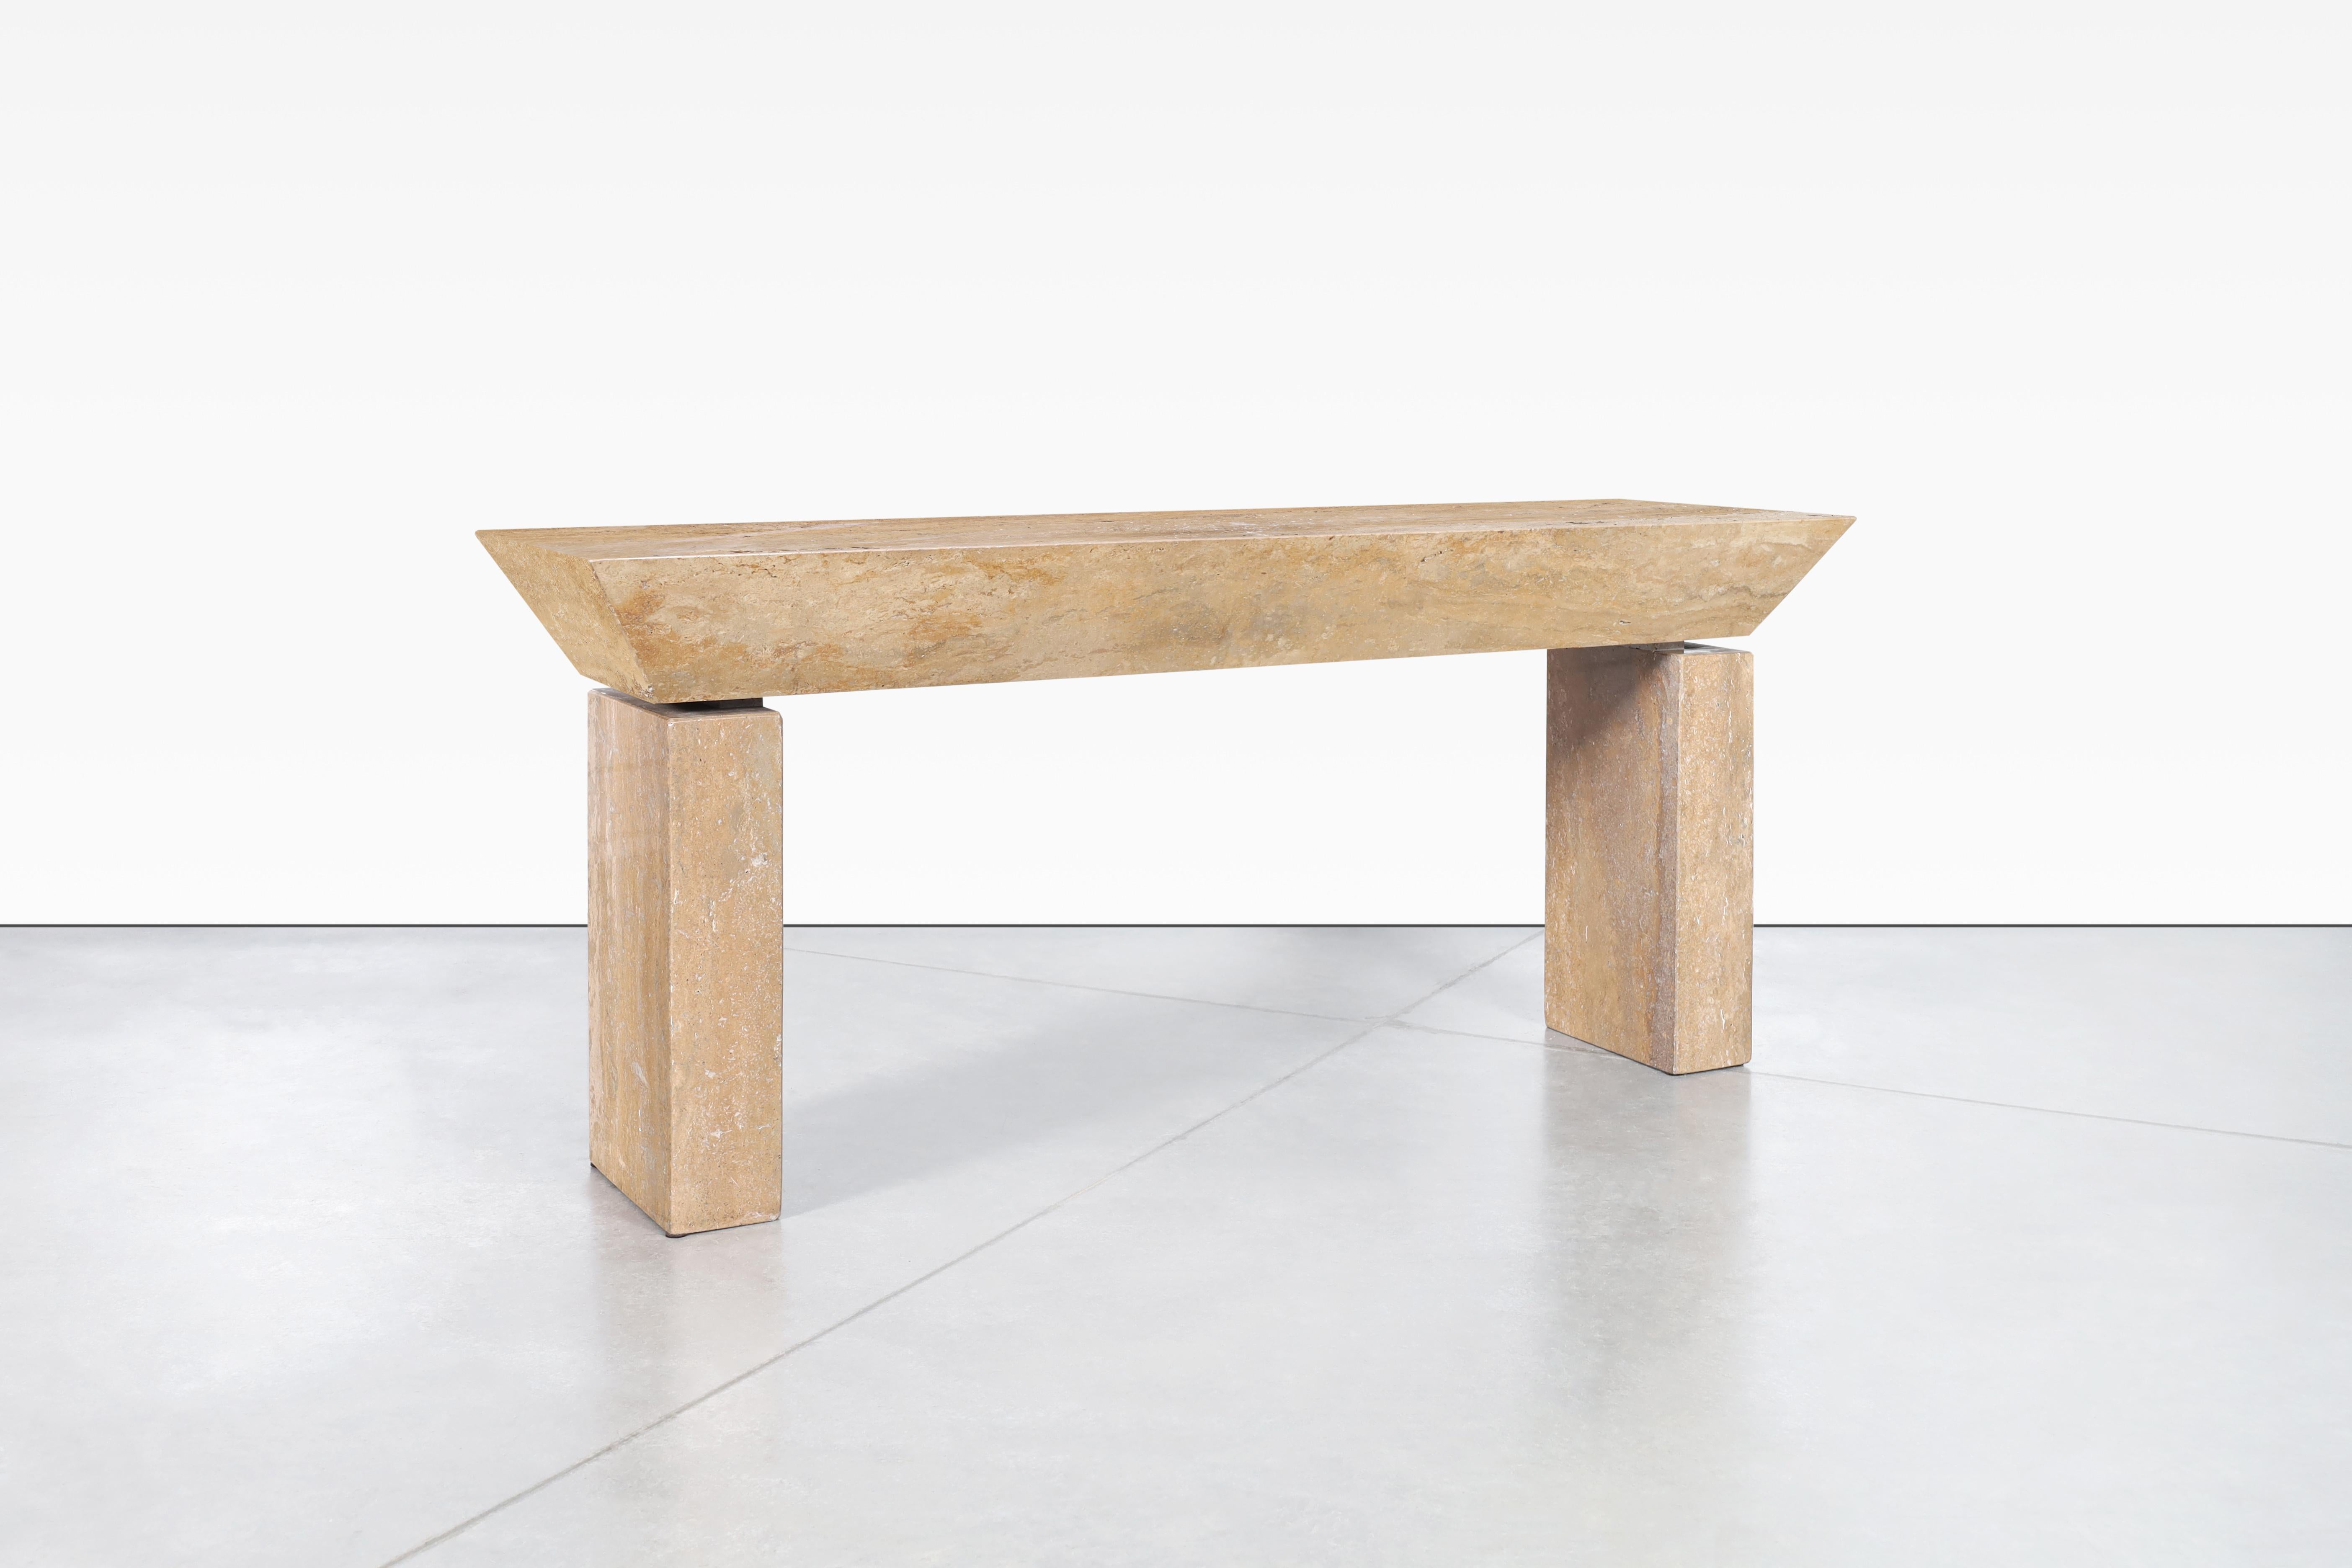 Merveilleuse table console moderniste italienne en travertin conçue en Italie. Le design moderniste est parfaitement complété par les minéraux naturels de la pierre de travertin. La table présente un plateau rectangulaire en travertin avec une